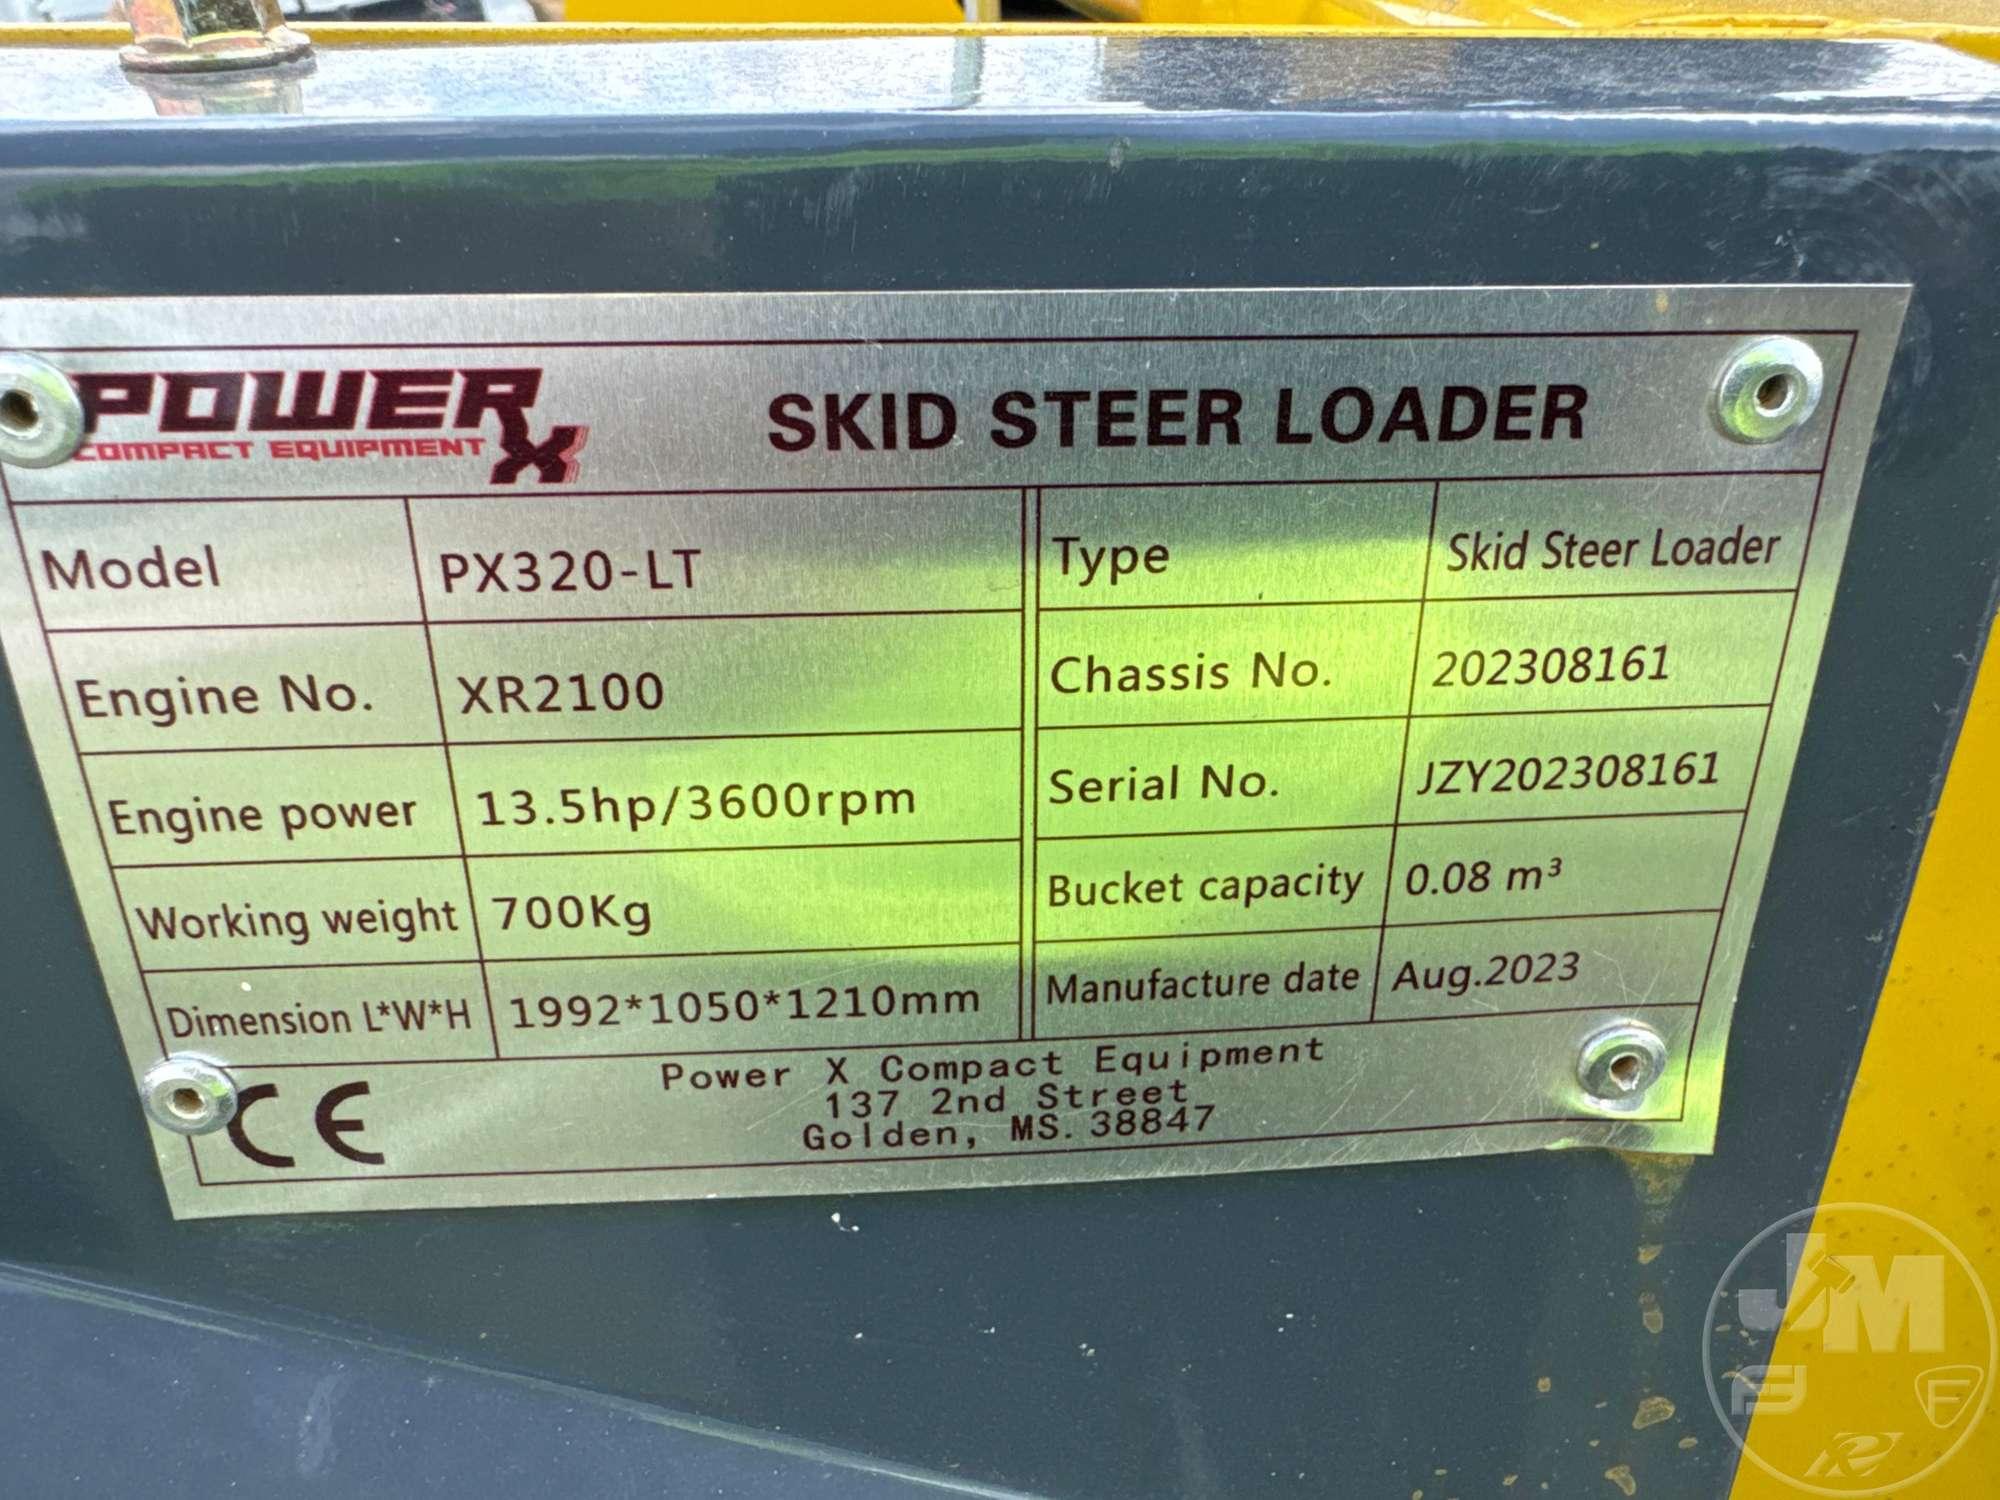 POWER -X MODEL PX320-LT MINI TRACK LOADER / SKID STEER